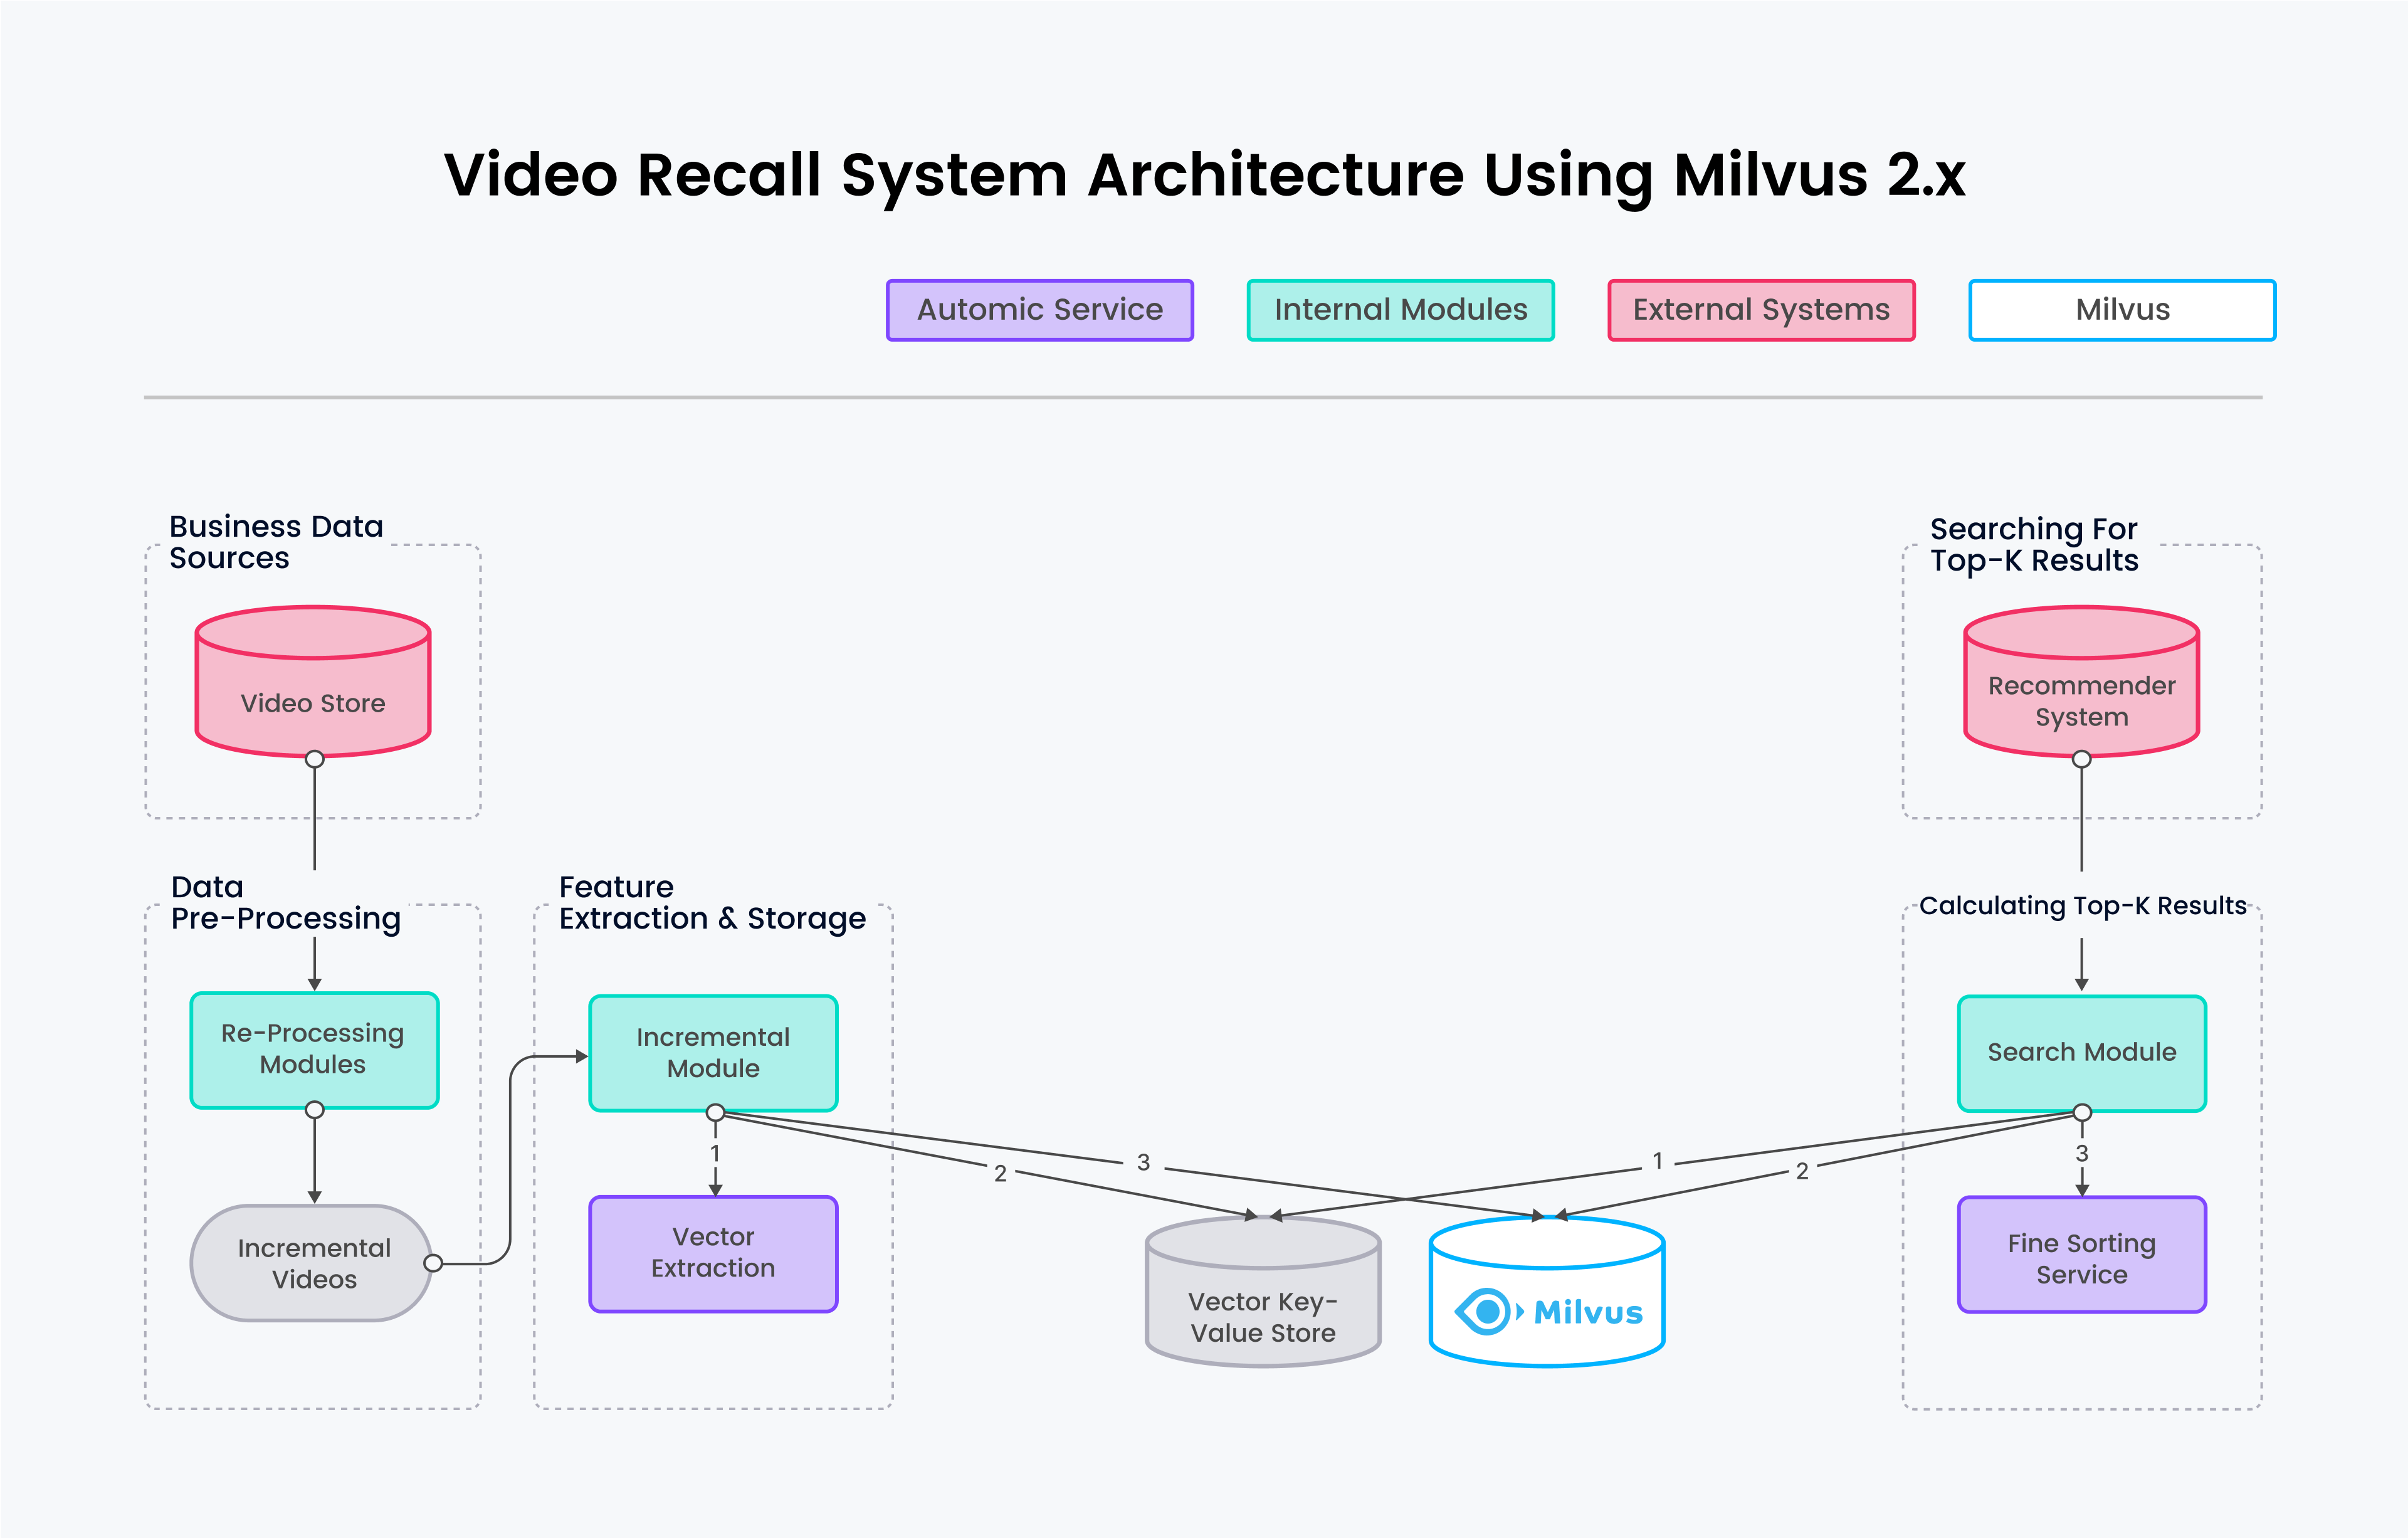 使用 Milvus 2.x 的视频召回系统架构